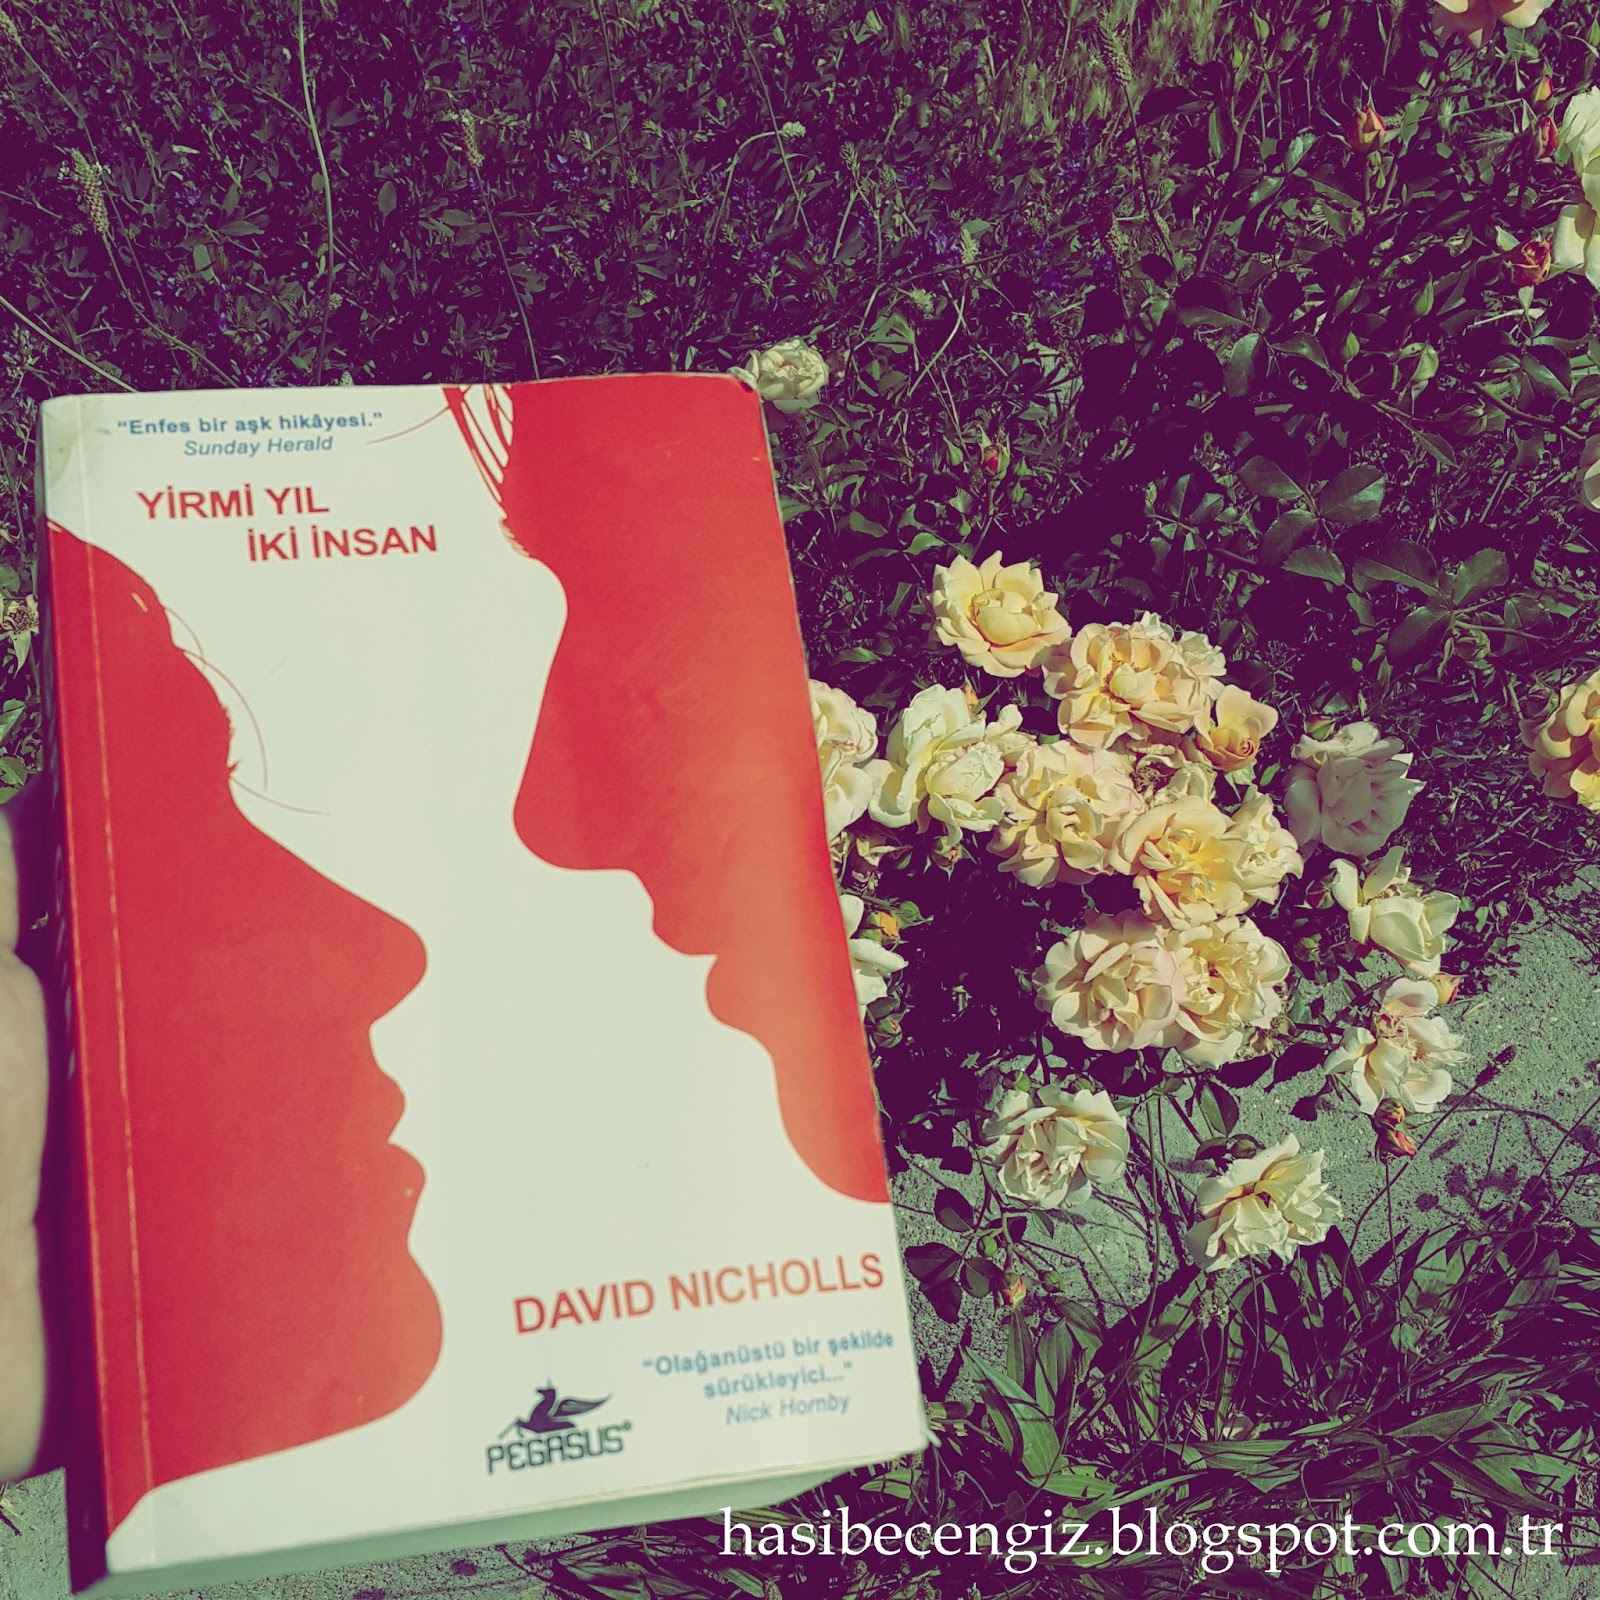 Дэвид николс один день. Nicholls David "one Day". One Day Дэвид. One Day David Nicholls book Cover back.